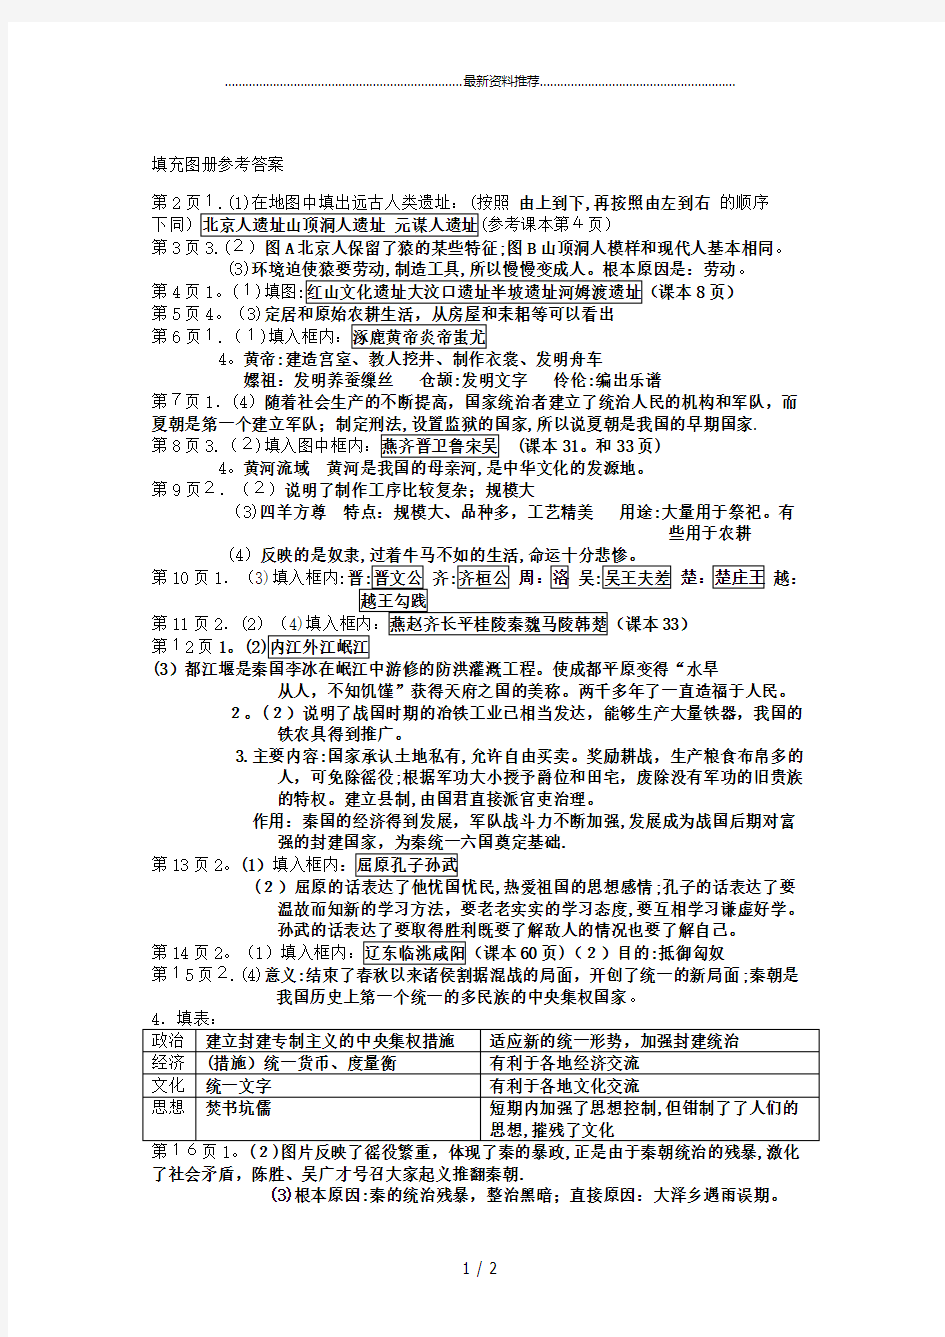 七年级上册 中国历史填充图册答案[资料][人教版]